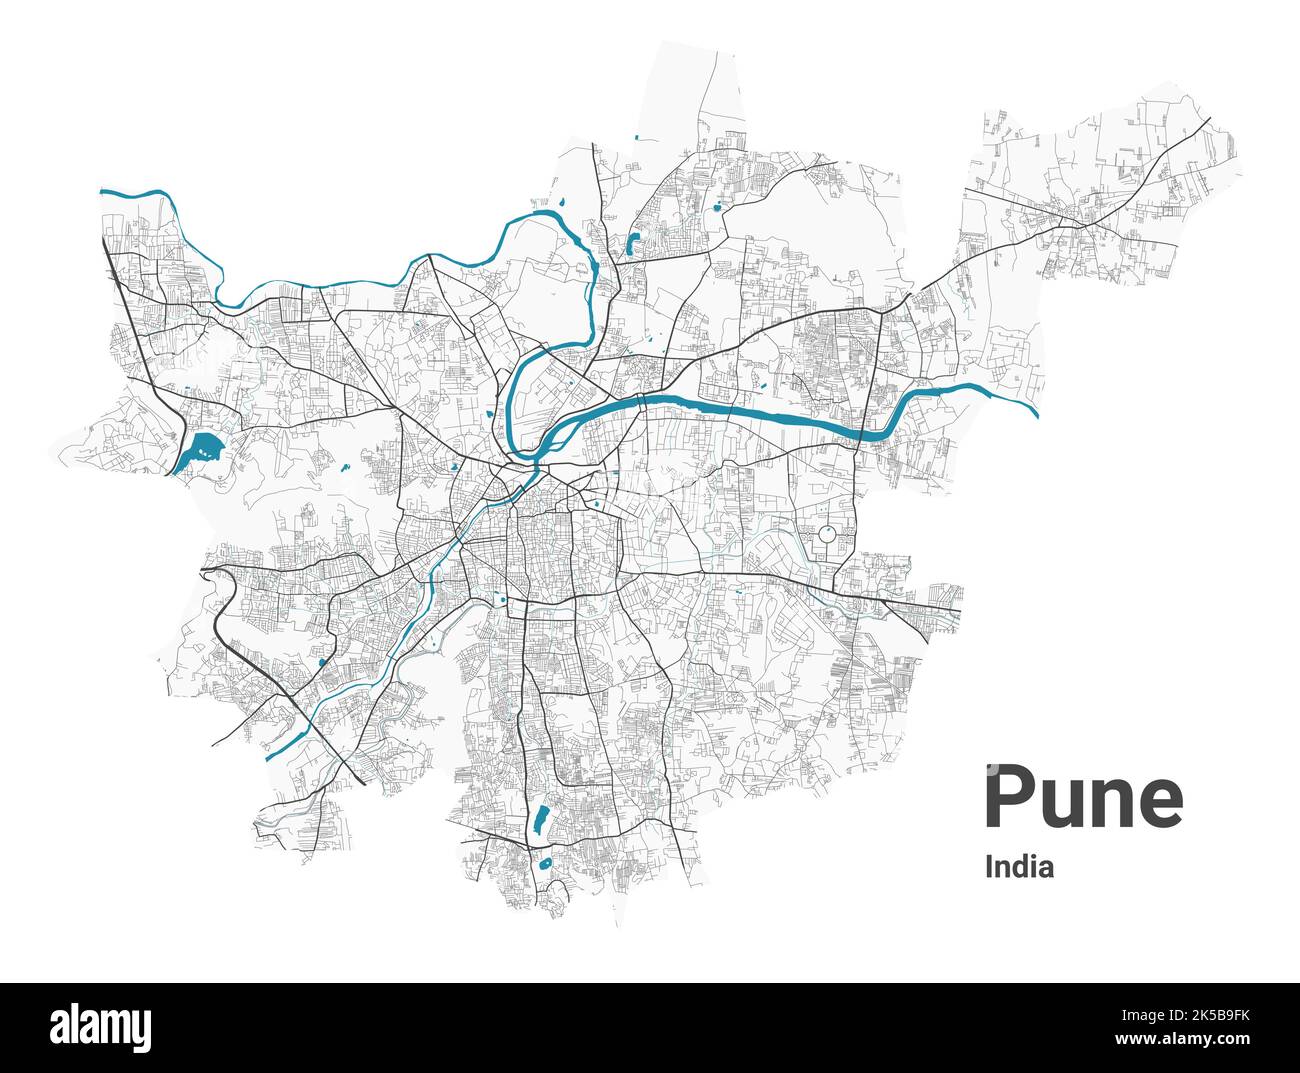 Mappa di Pune. Mappa dettagliata dell'area amministrativa della città di Pune. Panorama urbano. Illustrazione vettoriale senza royalty. Mappa stradale con autostrade, fiumi. Illustrazione Vettoriale